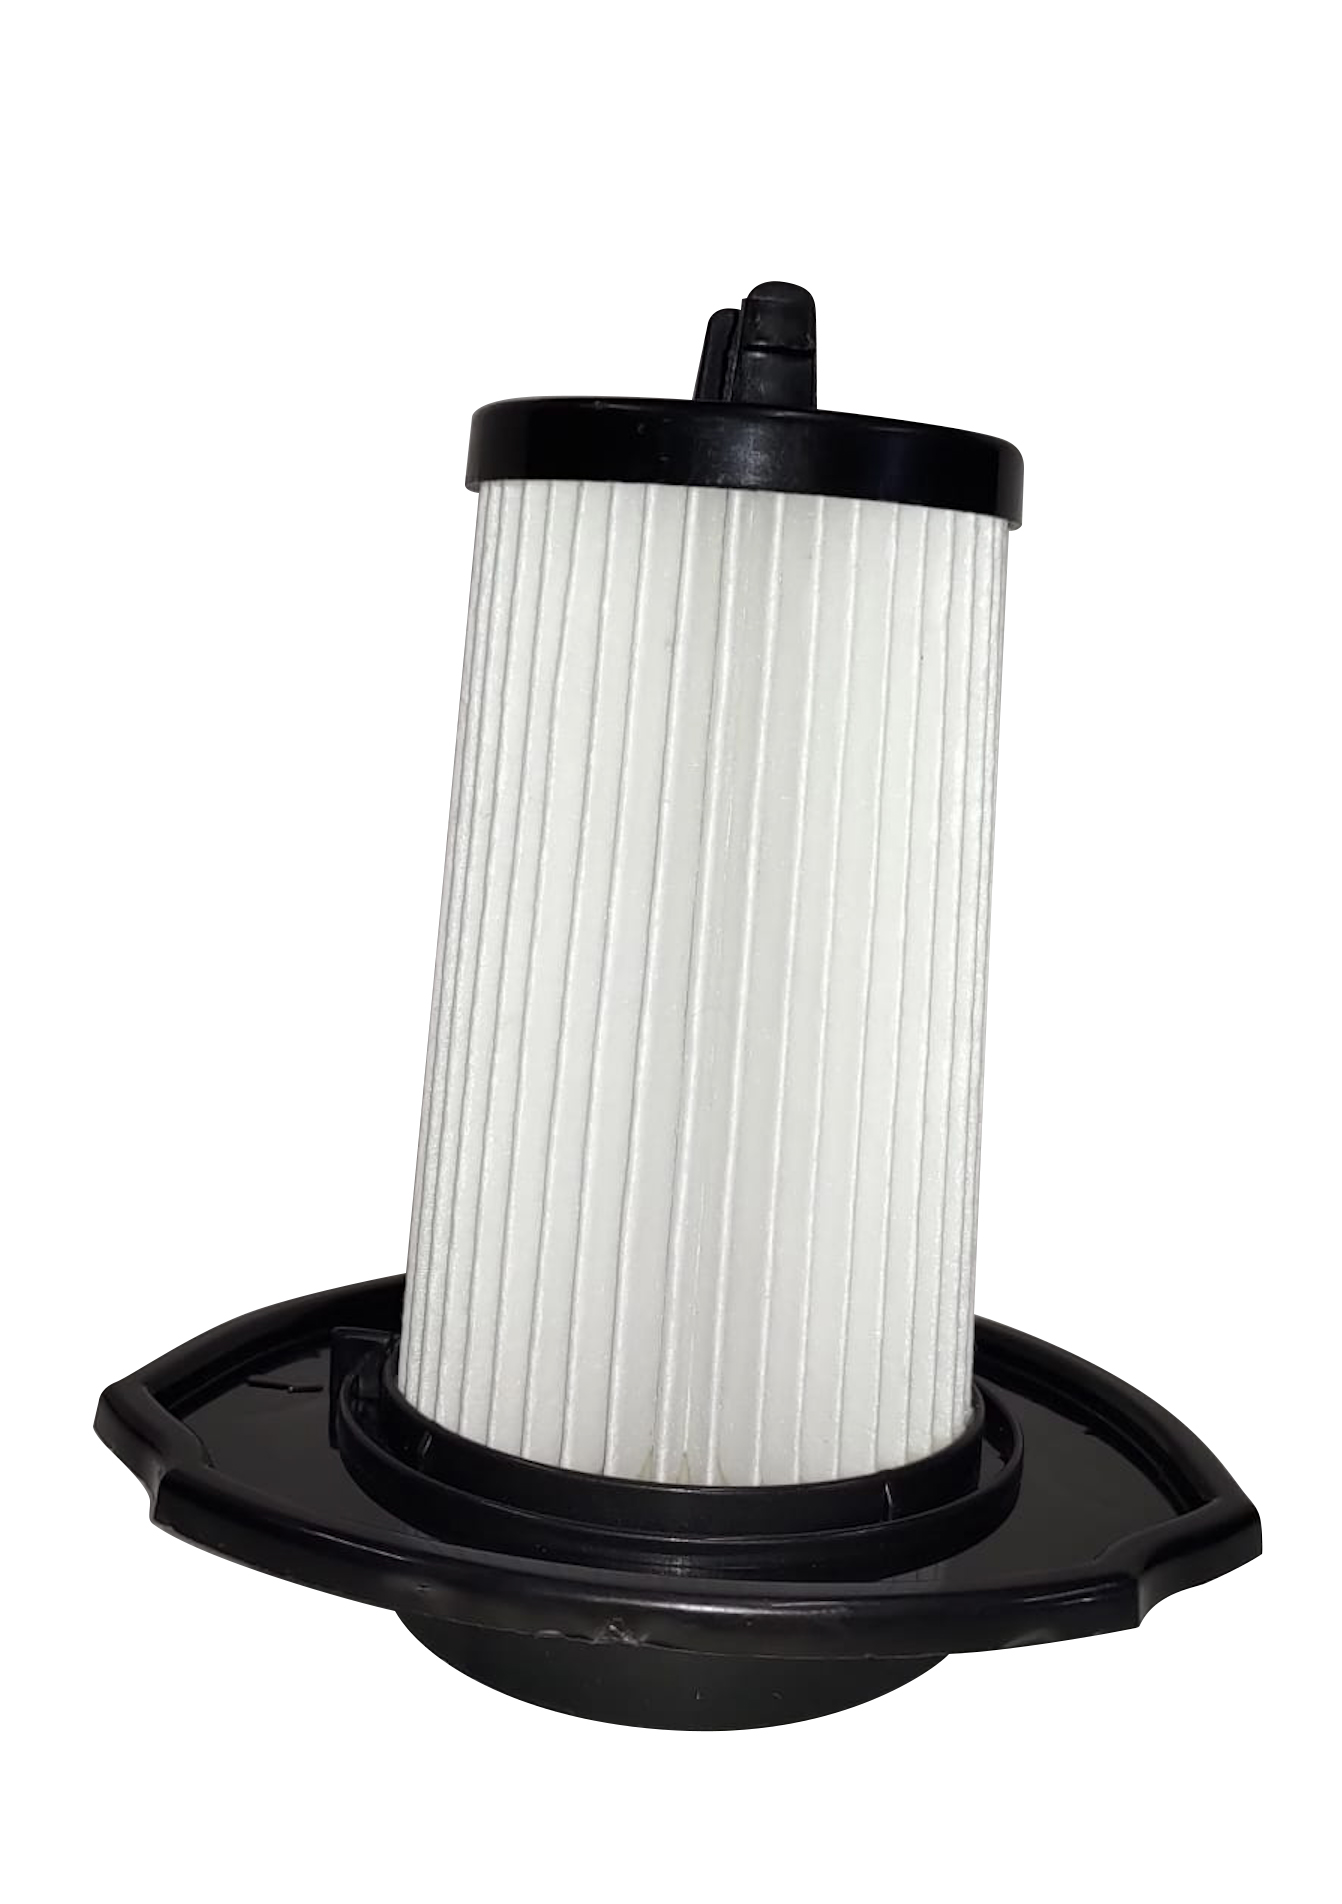 Nuovo filtro aspirapolvere filtro Hepa lavabile 1 pz filtro di